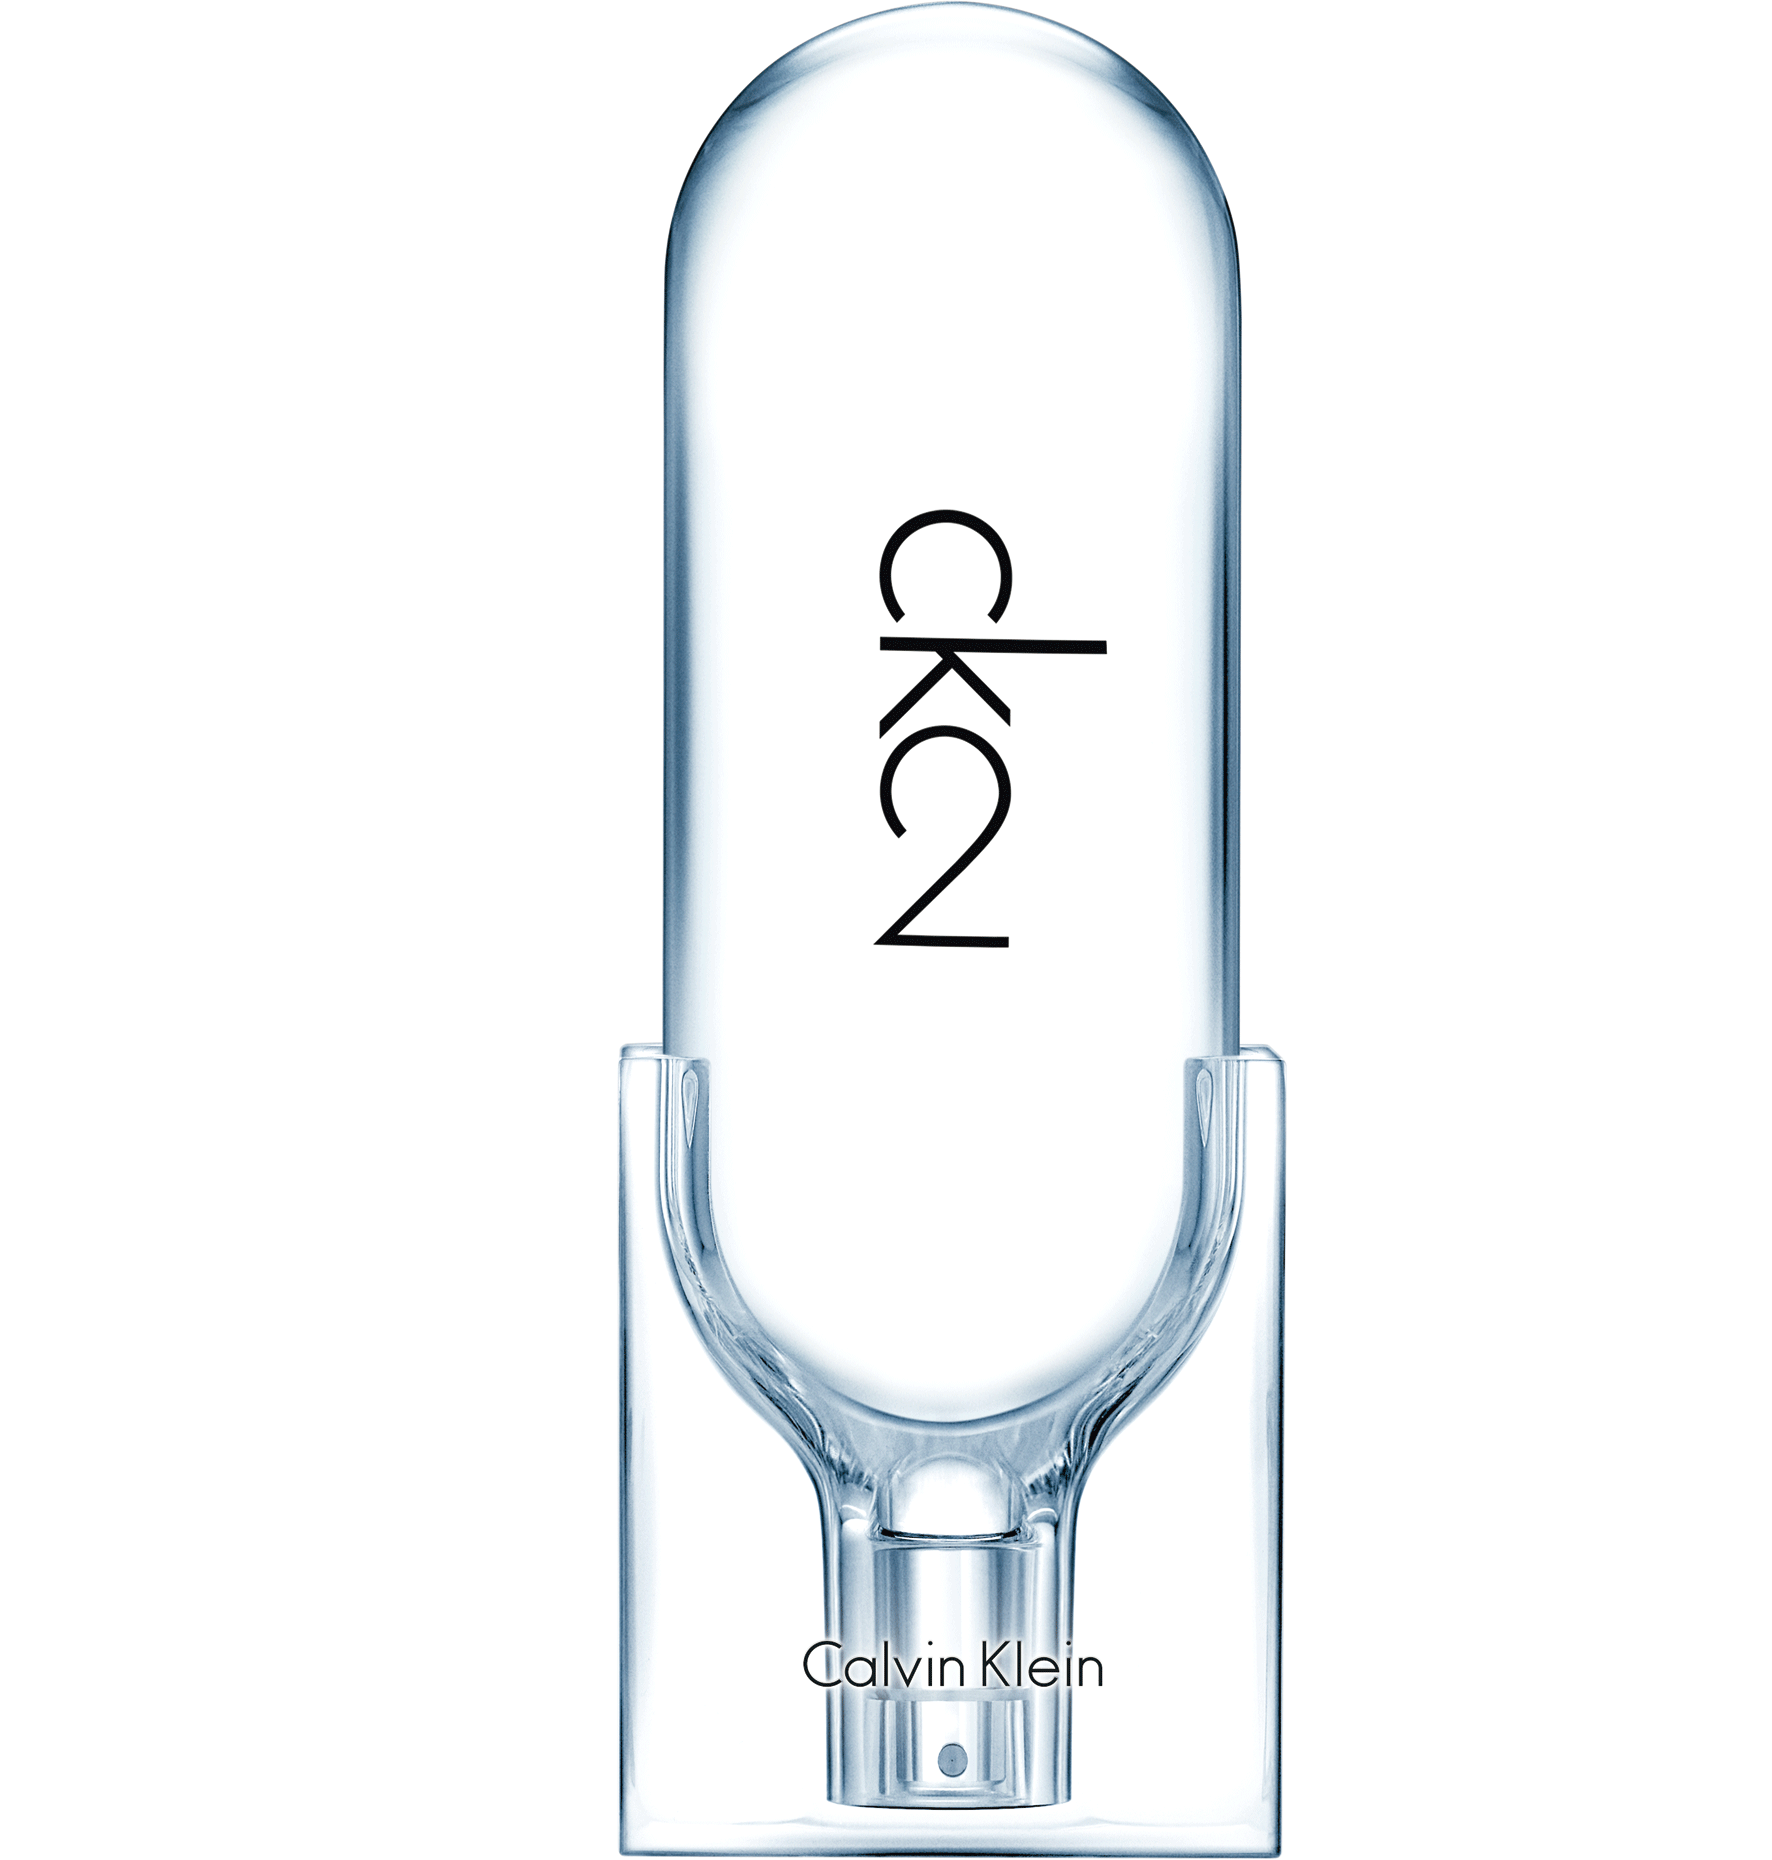 CK2, de Calvin Klein